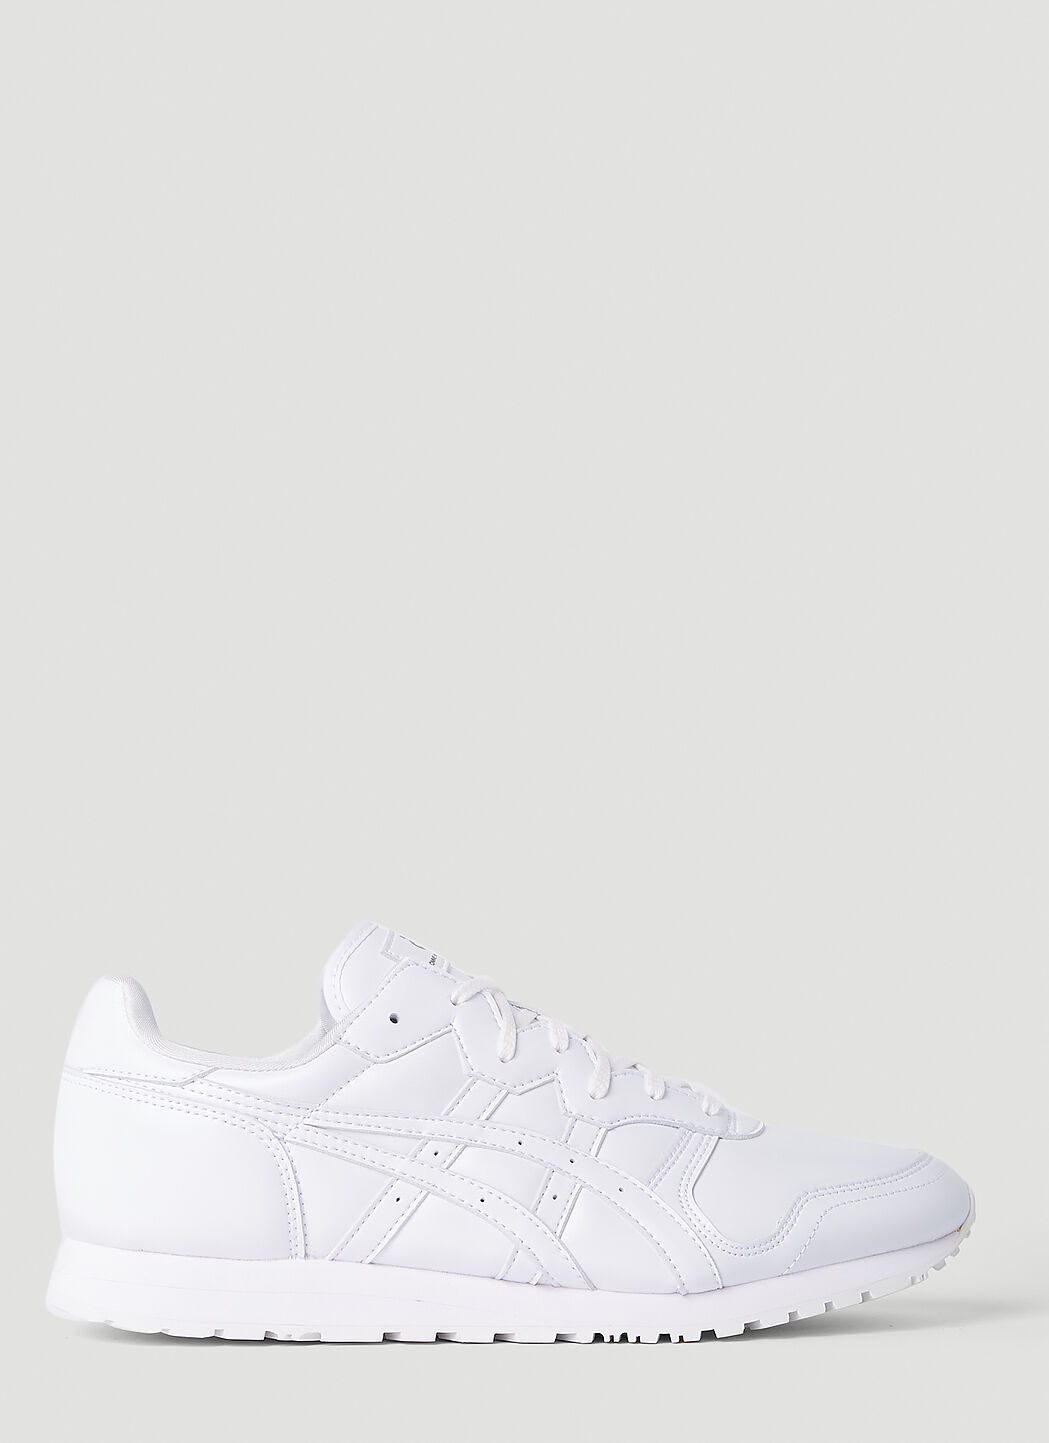 Comme des Garçons SHIRT x Asics OC Runner Sneakers White cdg0156002